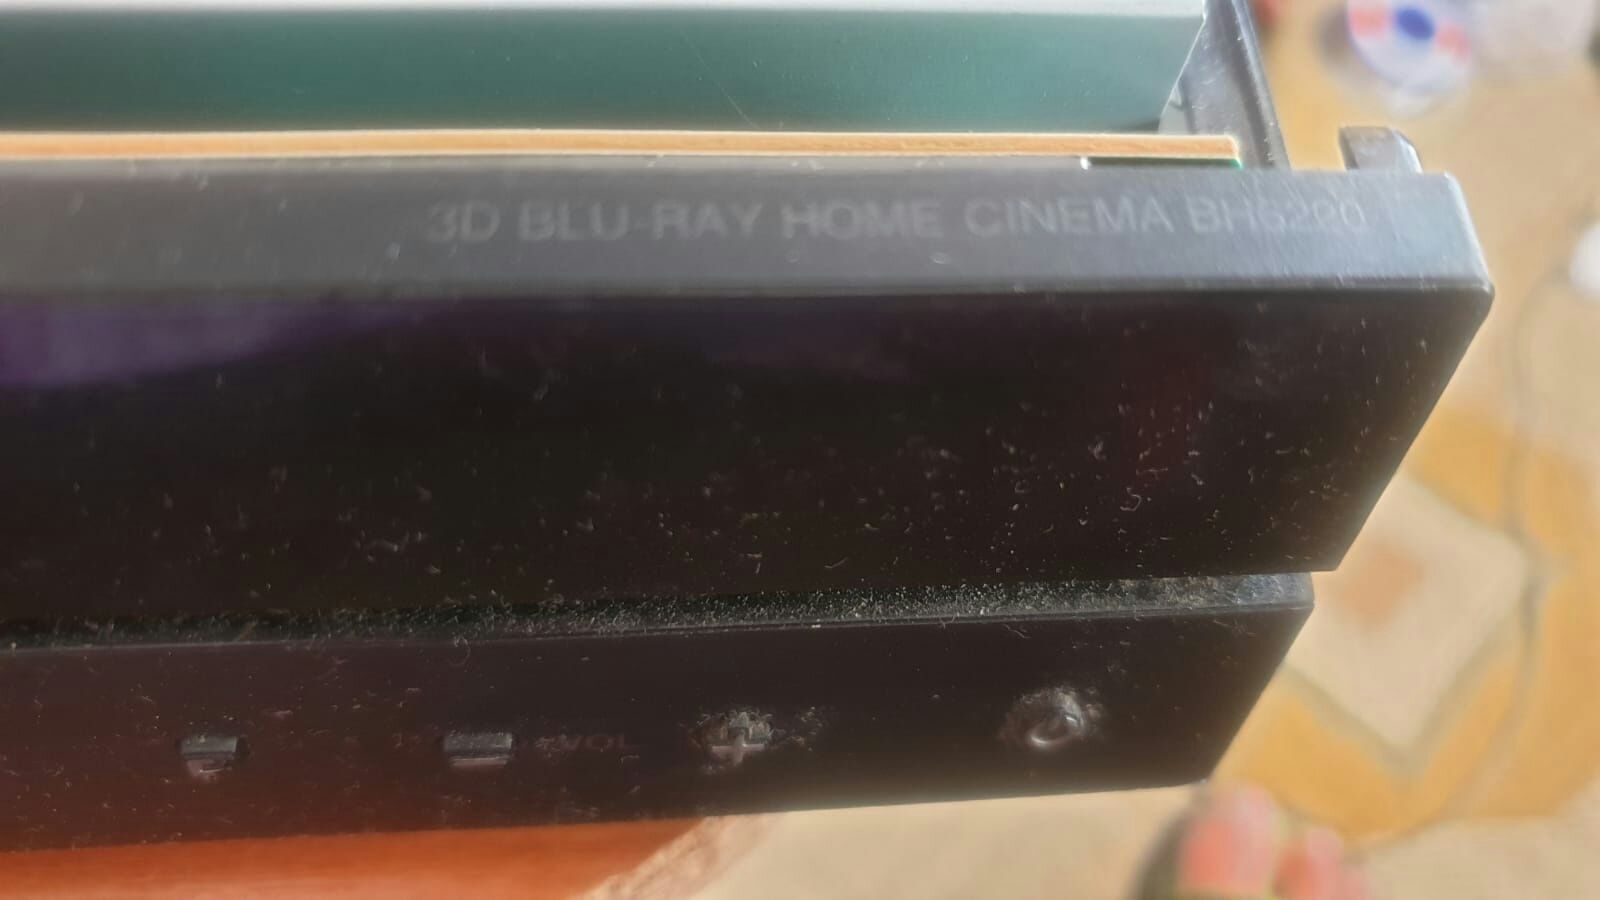 Componente LG blu Ray bh 6220